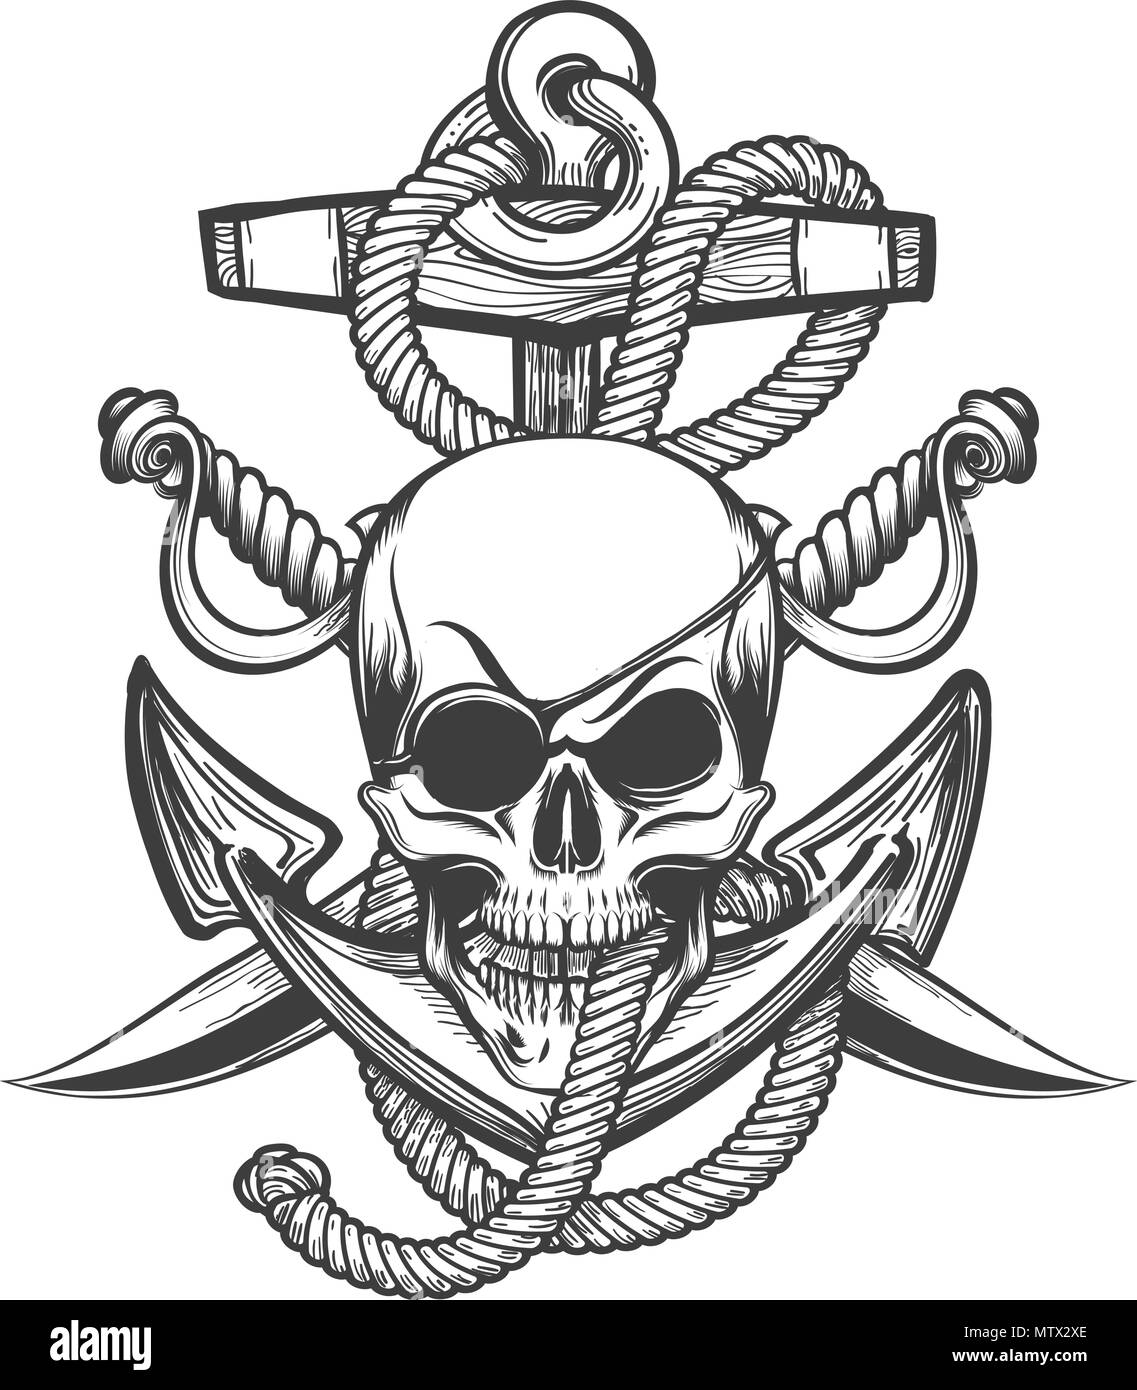 Crâne humain avec Eyepath et deux sabres contre des cordes d'ancrage dans drawmn dans style de tatouage. Vector illustration. Illustration de Vecteur